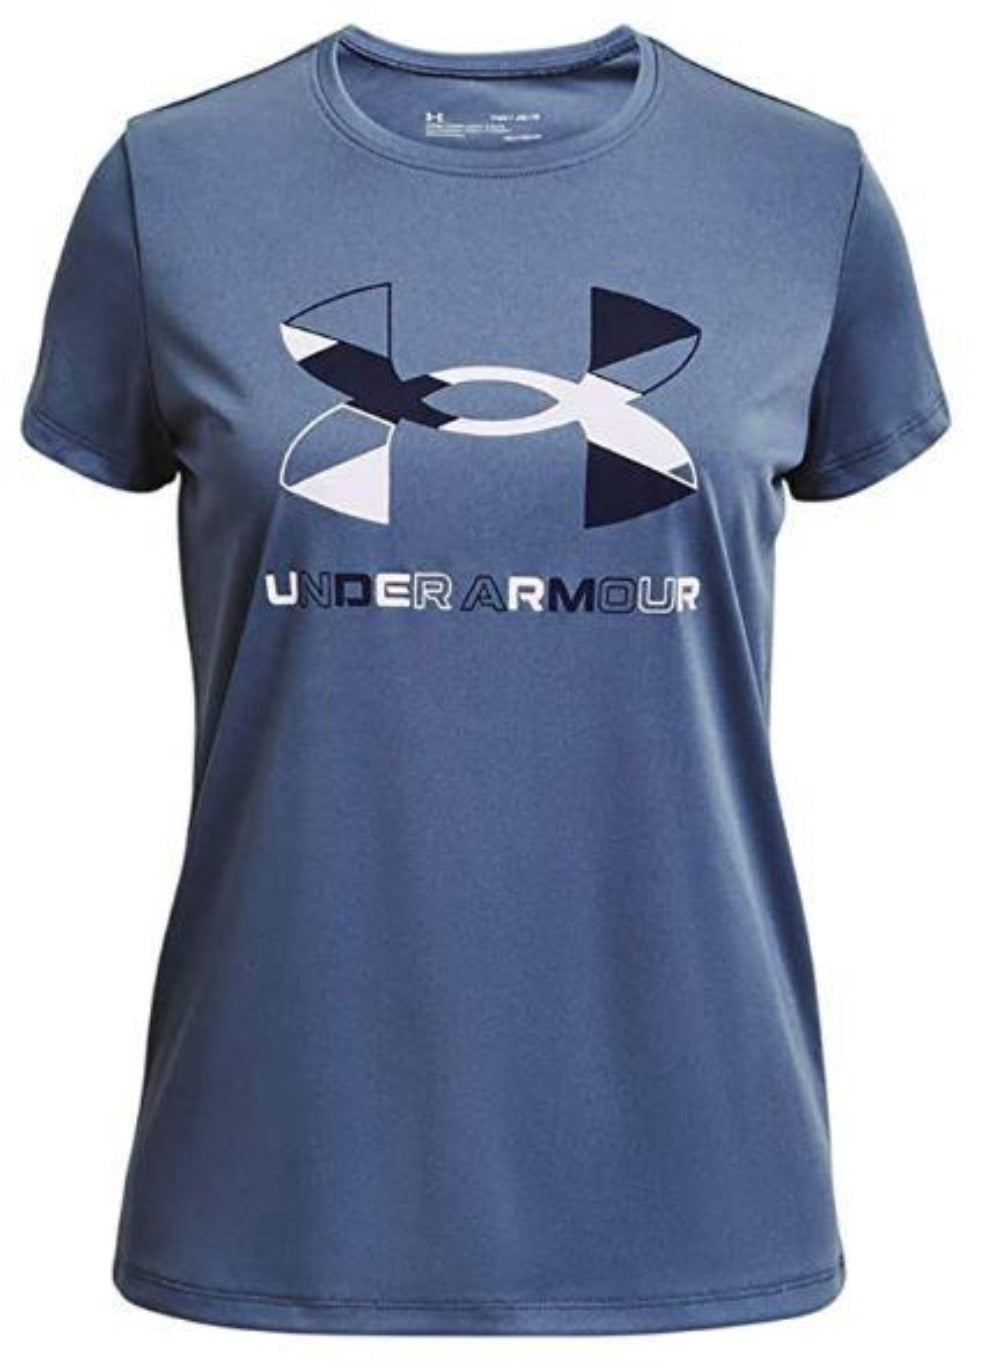 Under Armour Women's medium Bubble Tech Loose fit Blue T-Shirt